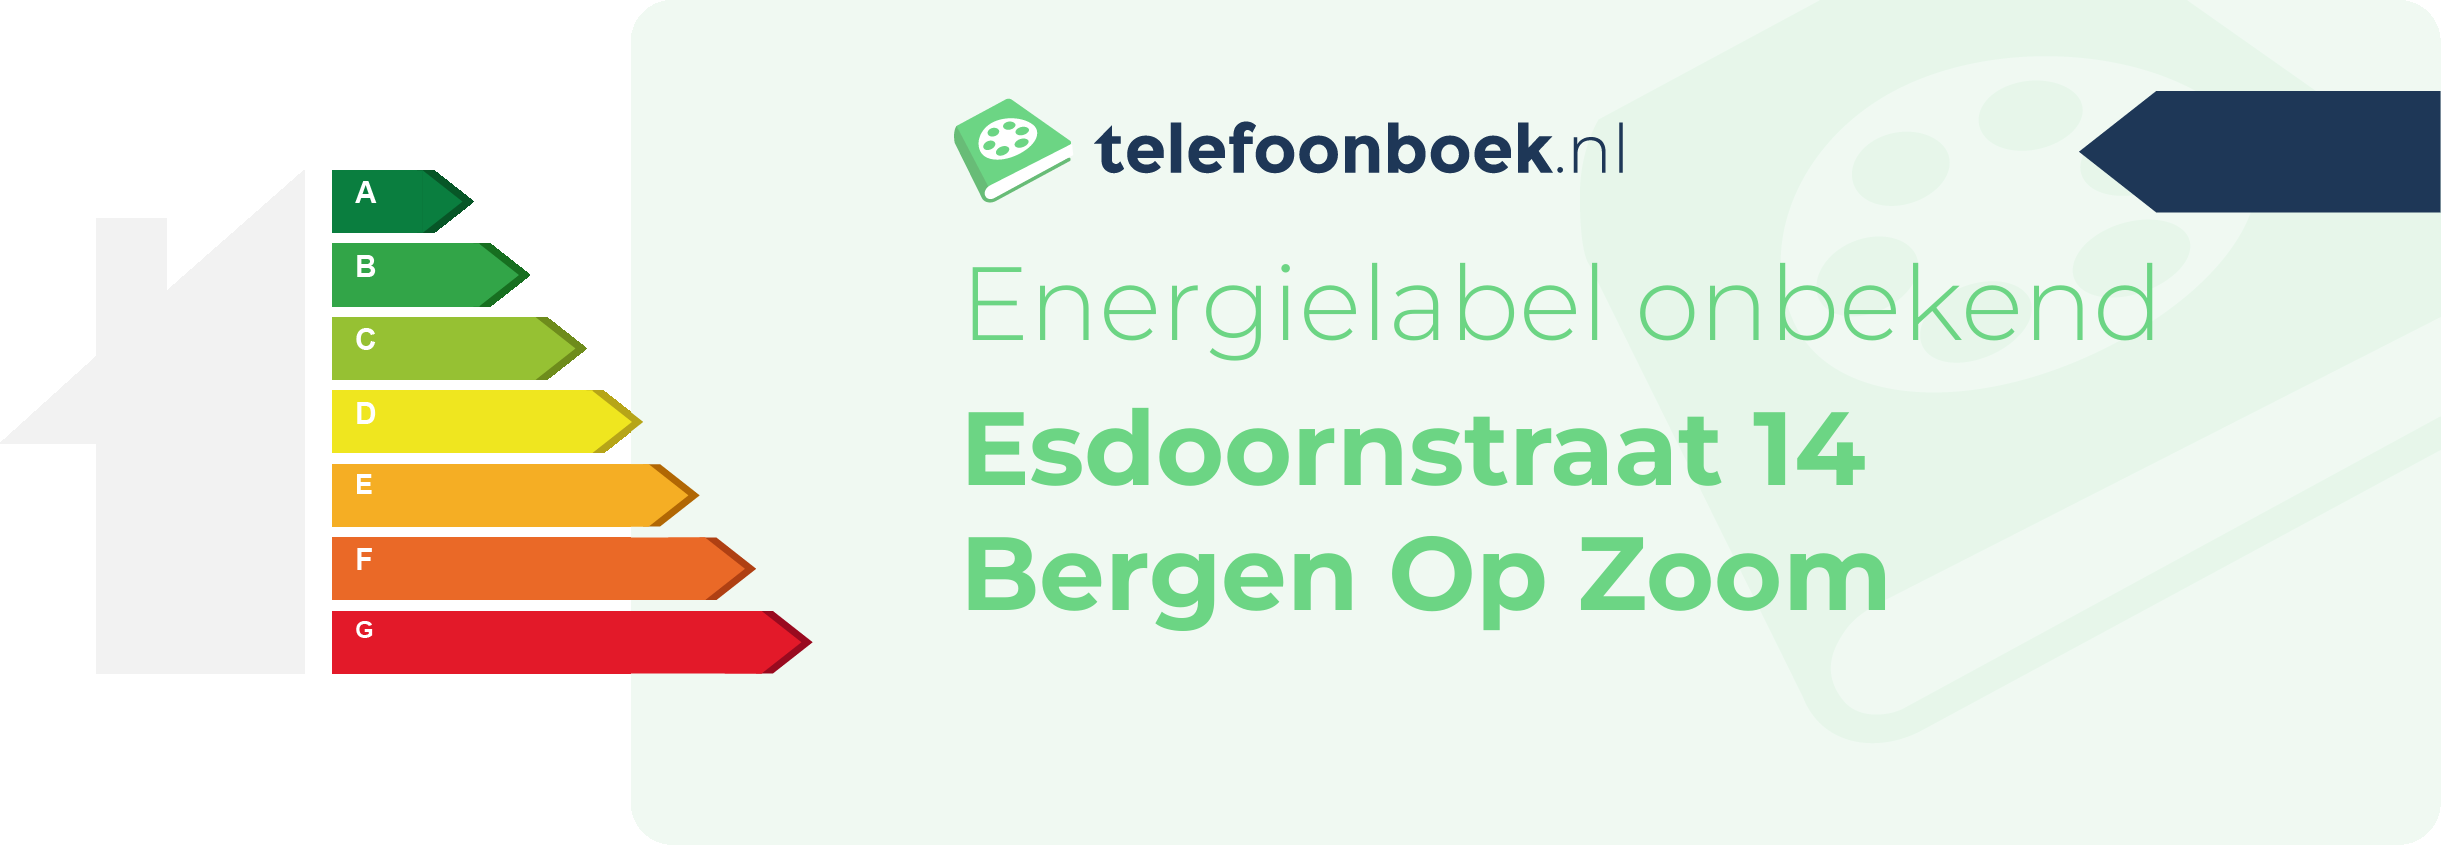 Energielabel Esdoornstraat 14 Bergen Op Zoom